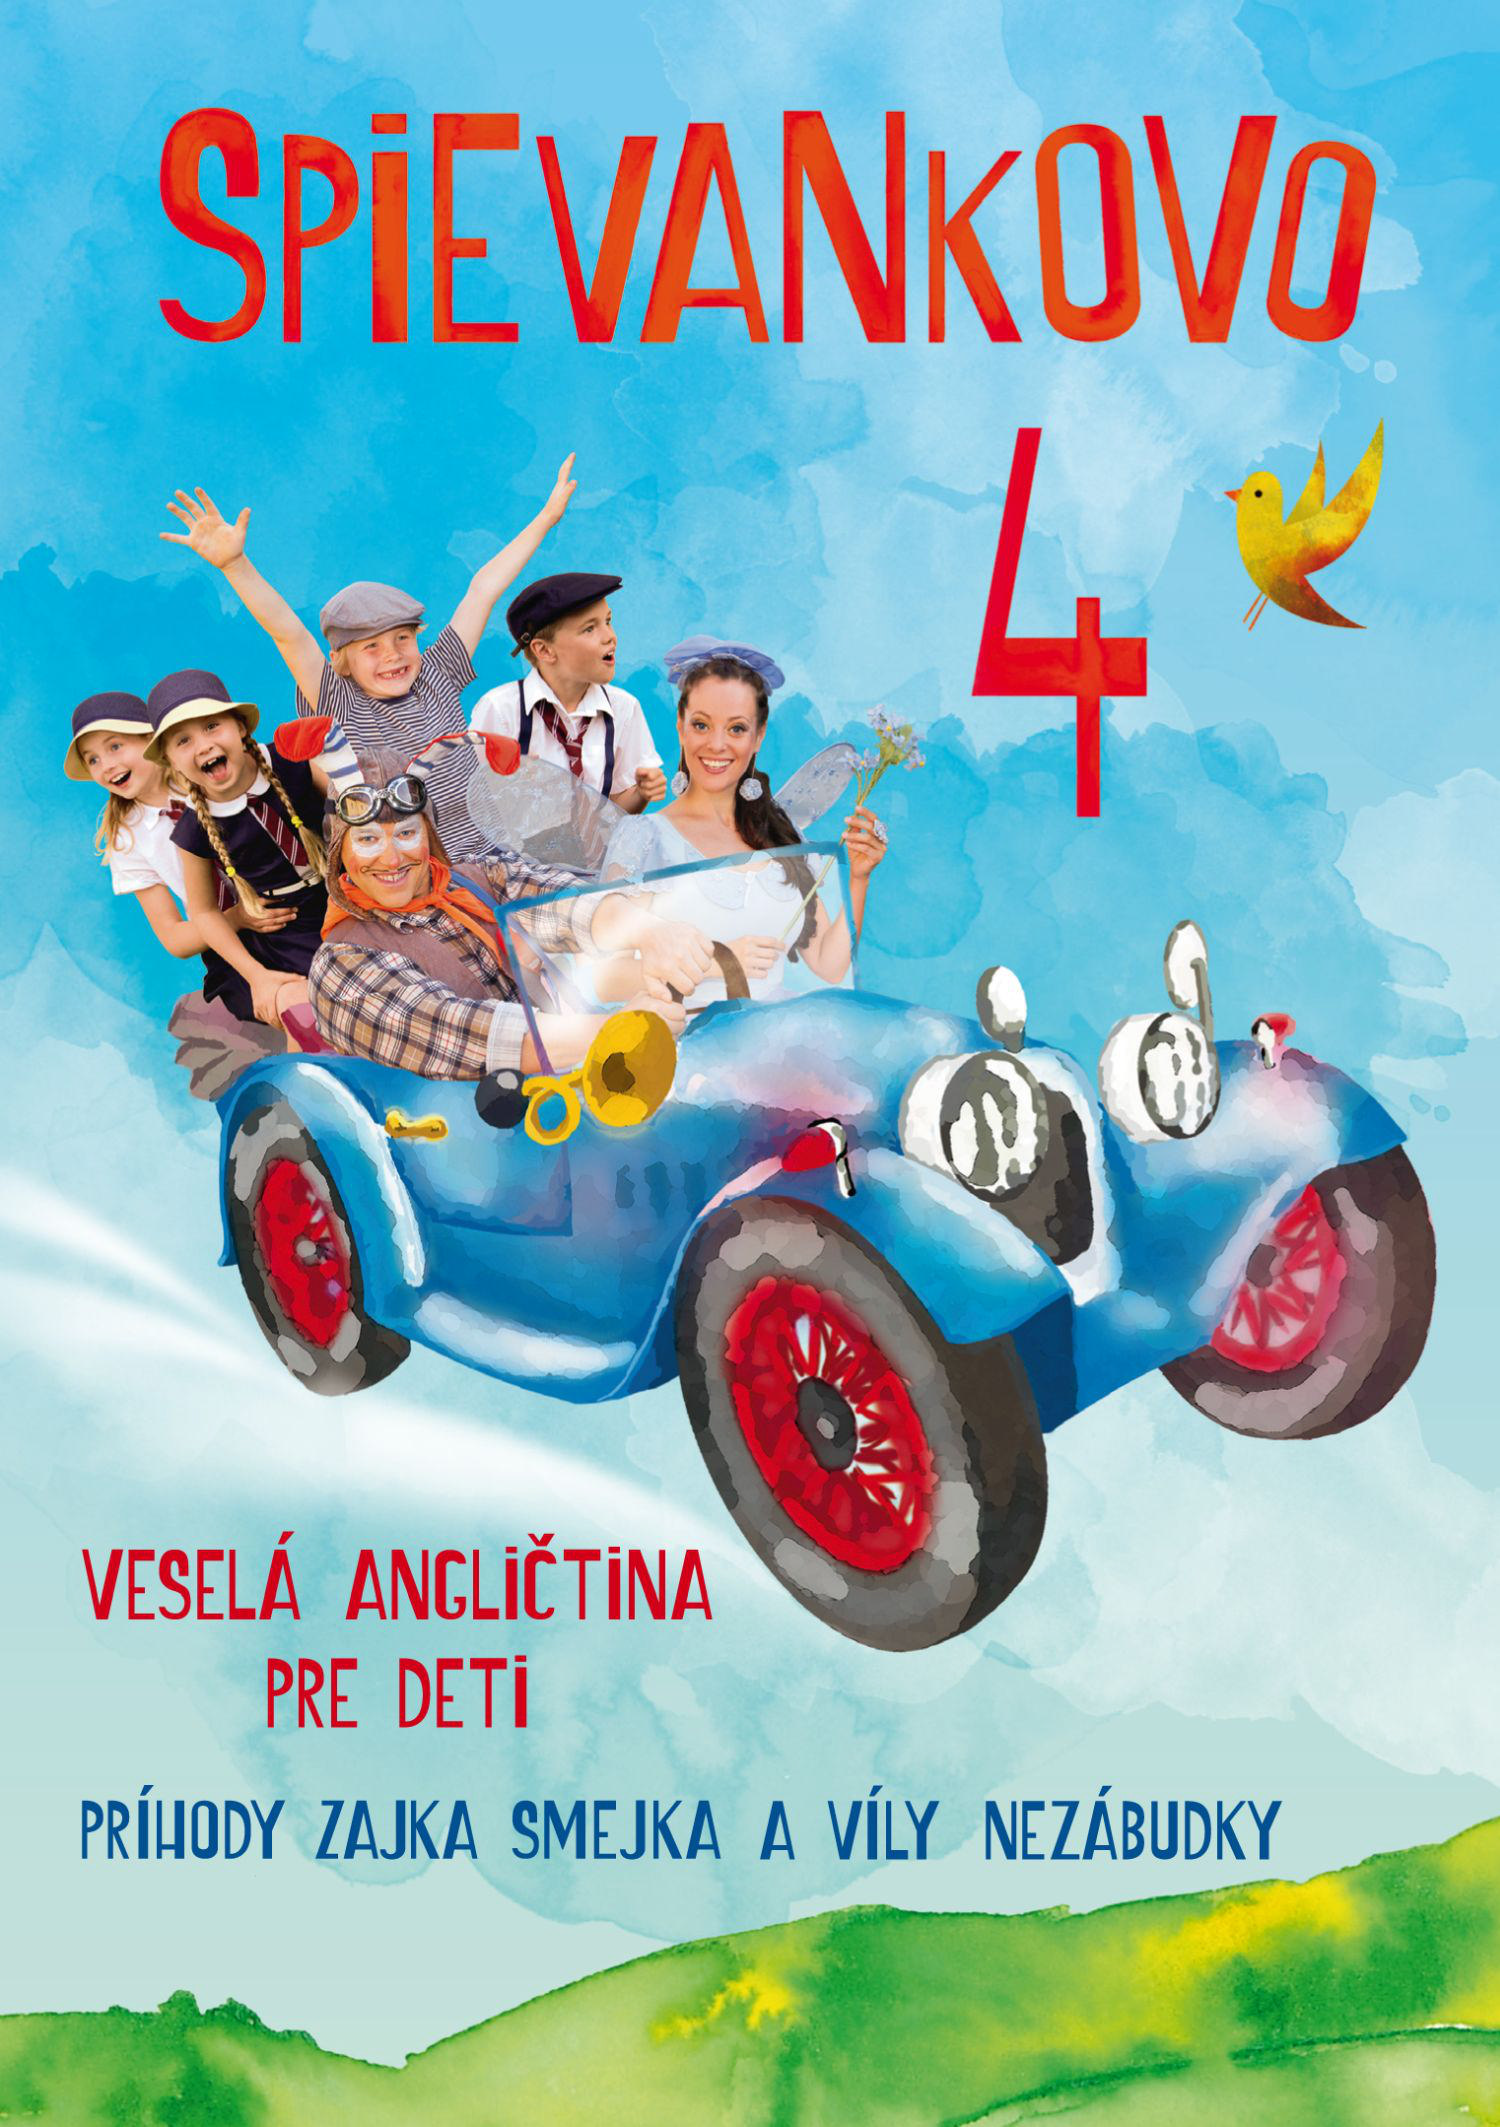 CD Shop - SPIEVANKOVO 4 VESELA ANGL. PRE DETI (2 DVD)